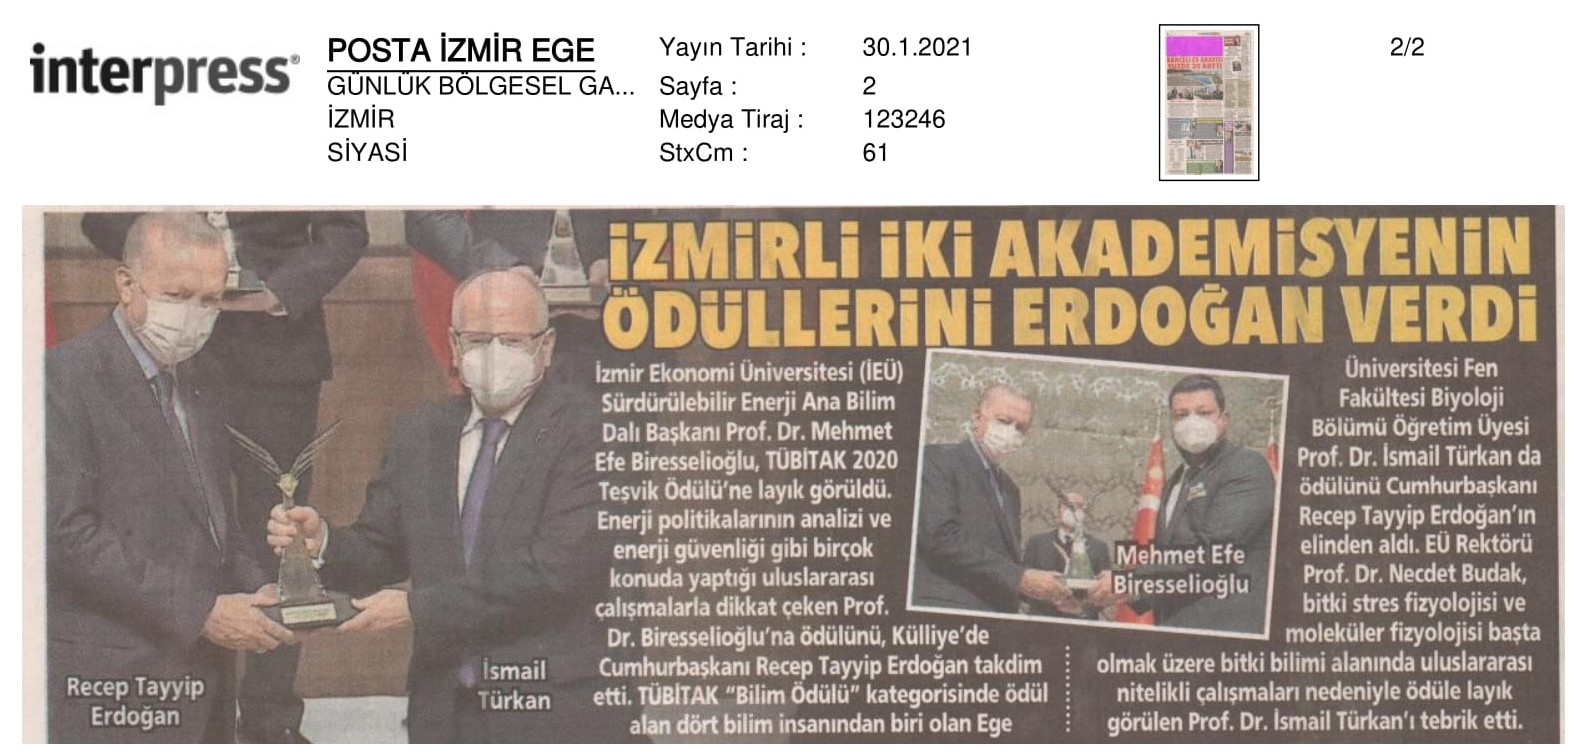 İEÜ’lü enerji profesörü, ödülünü Cumhurbaşkanı Erdoğan’ın elinden aldı